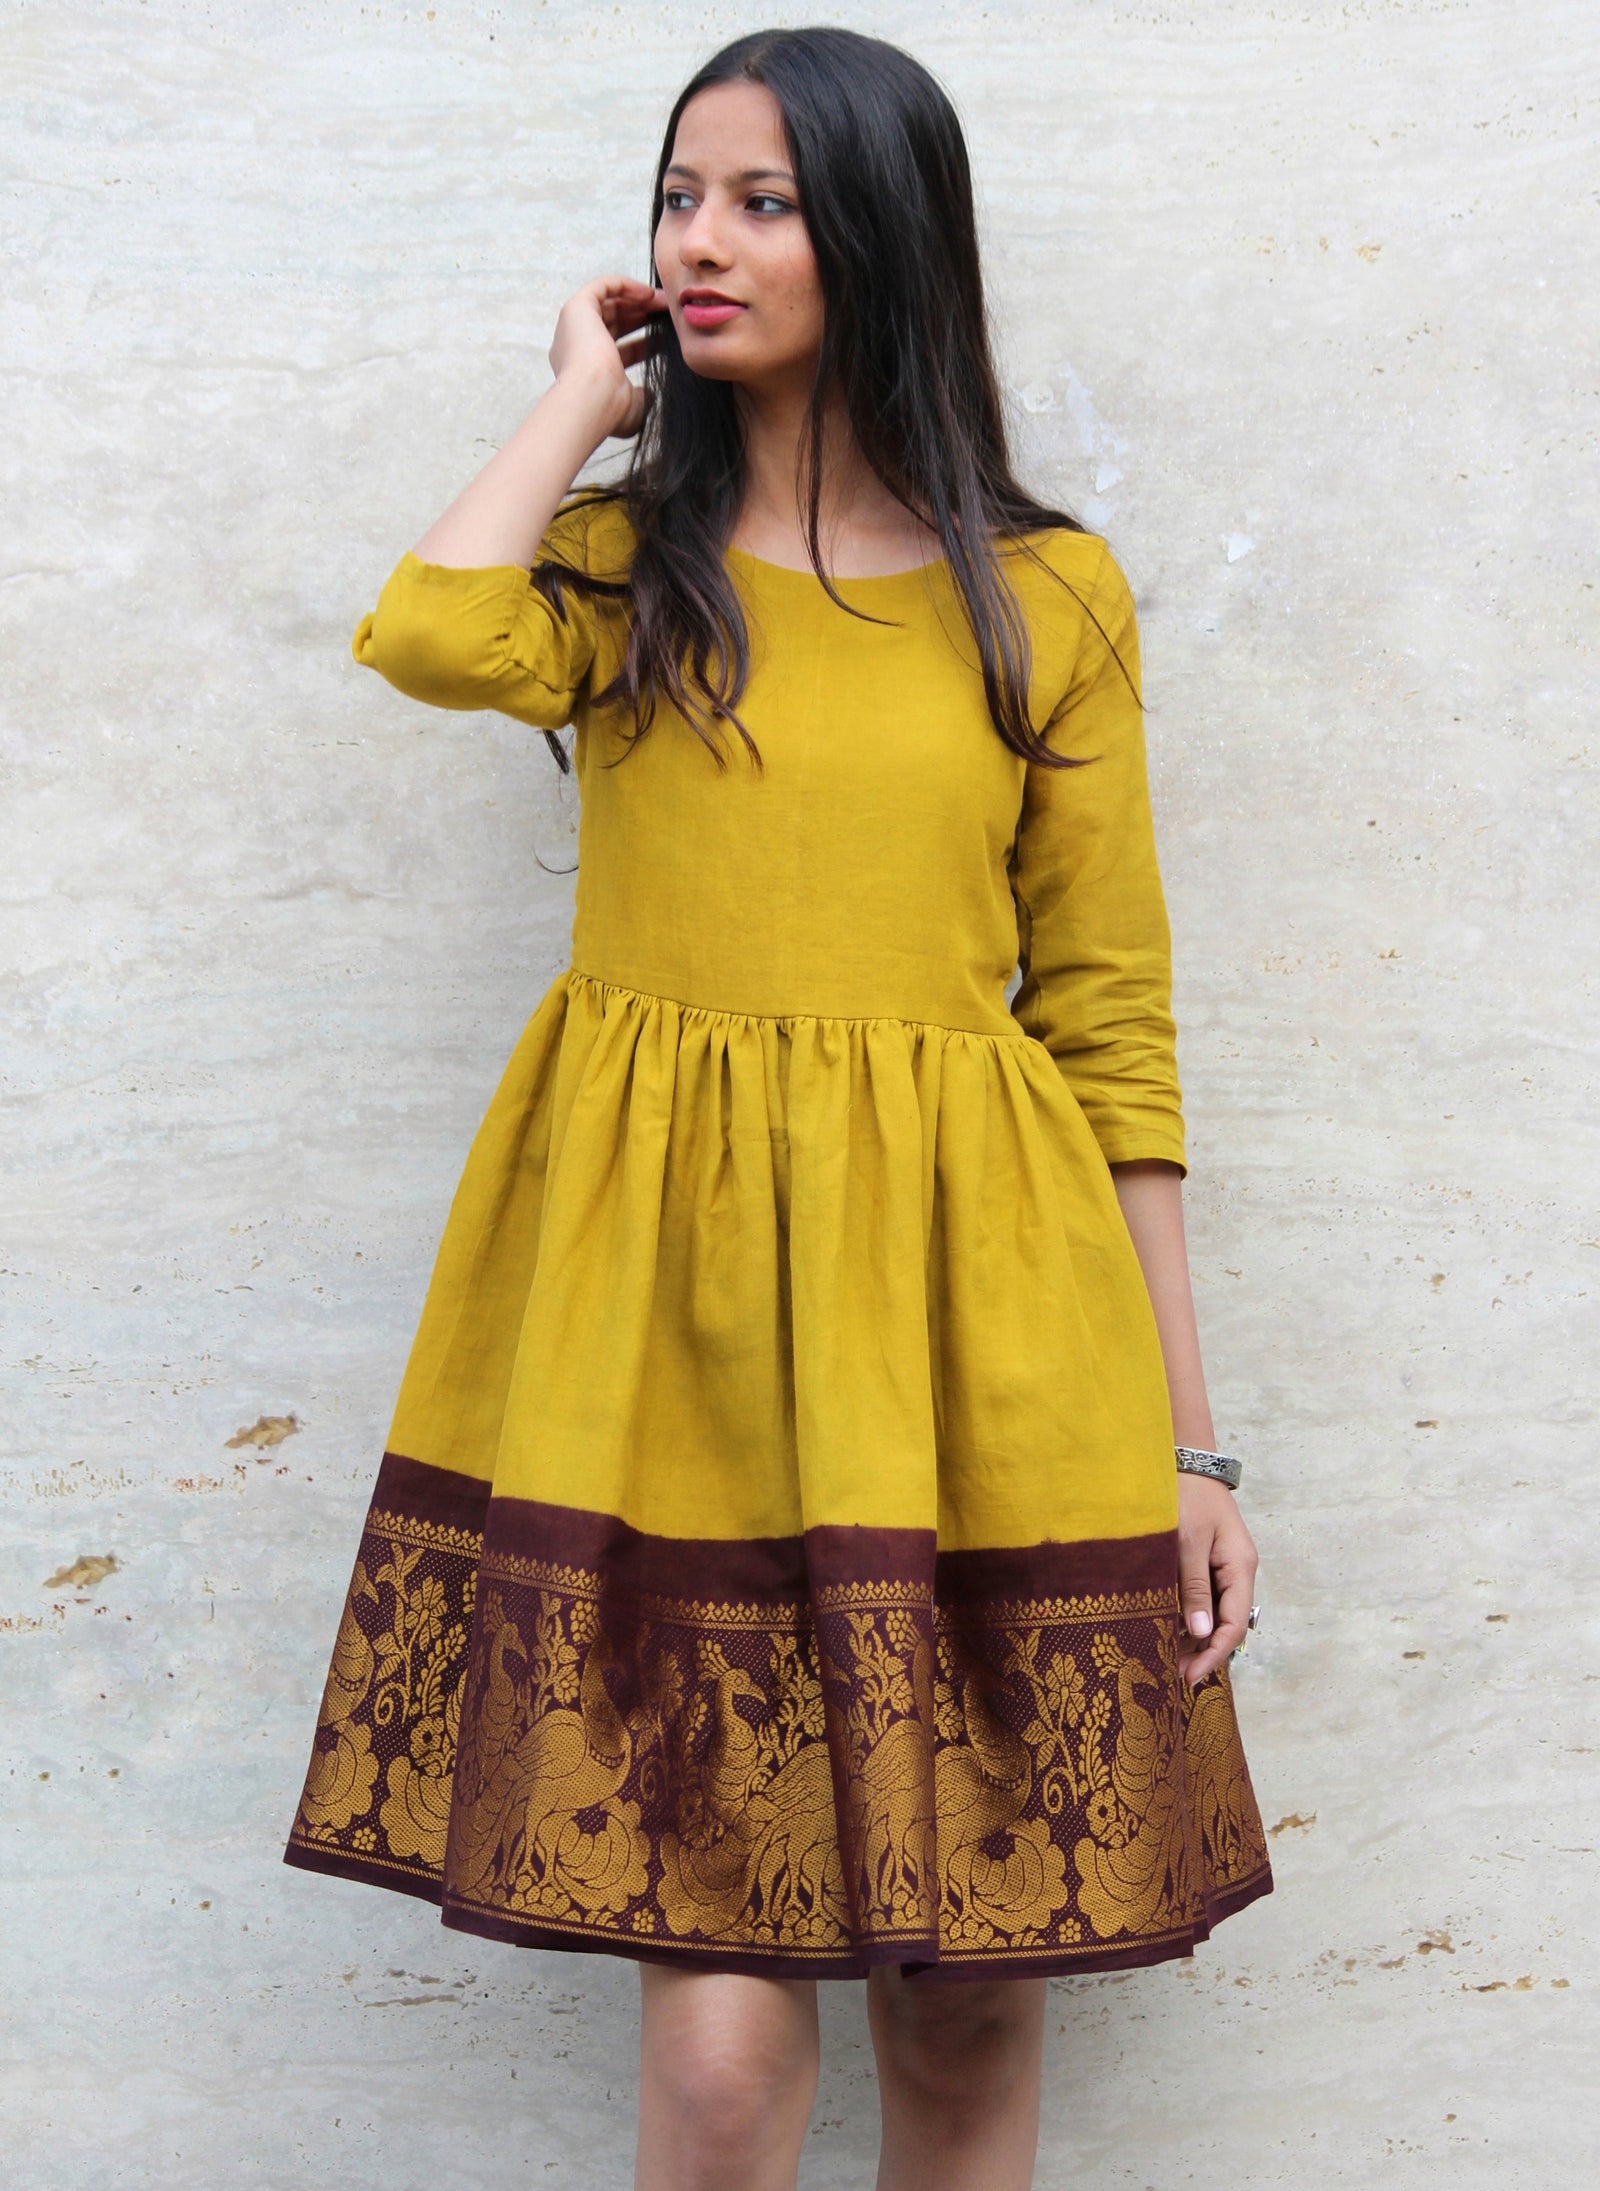 DIY:Convert Old Saree into Long Gown/ Maxi Dress | Arpana - YouTube